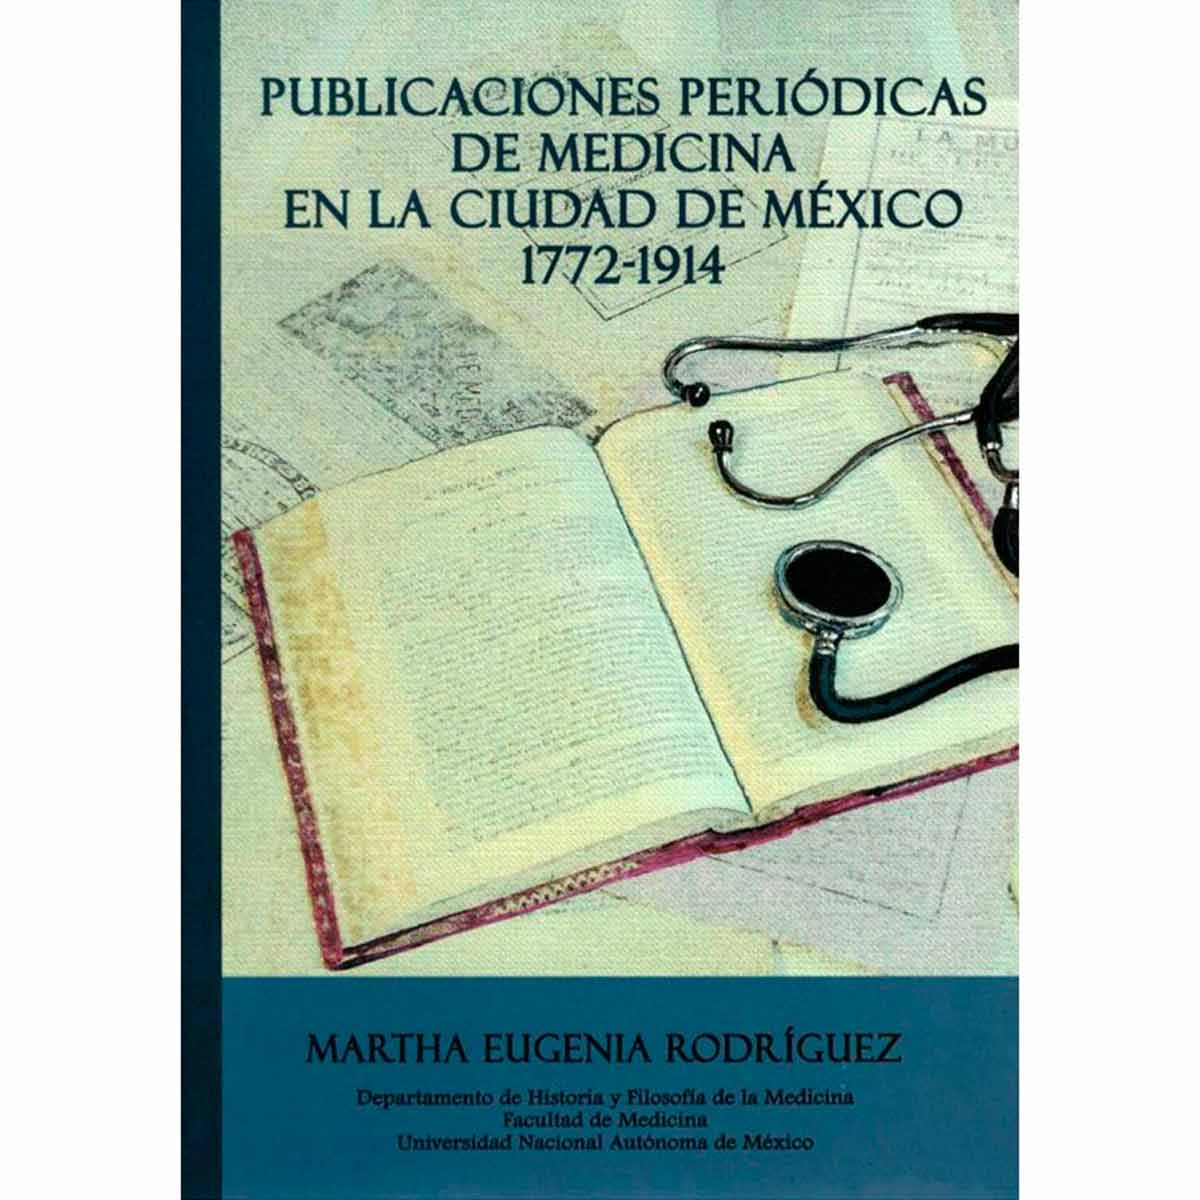 PUBLICACIONES PERIÓDICAS DE MEDICINA EN LA CIUDAD DE MÉXICO 1772-1914